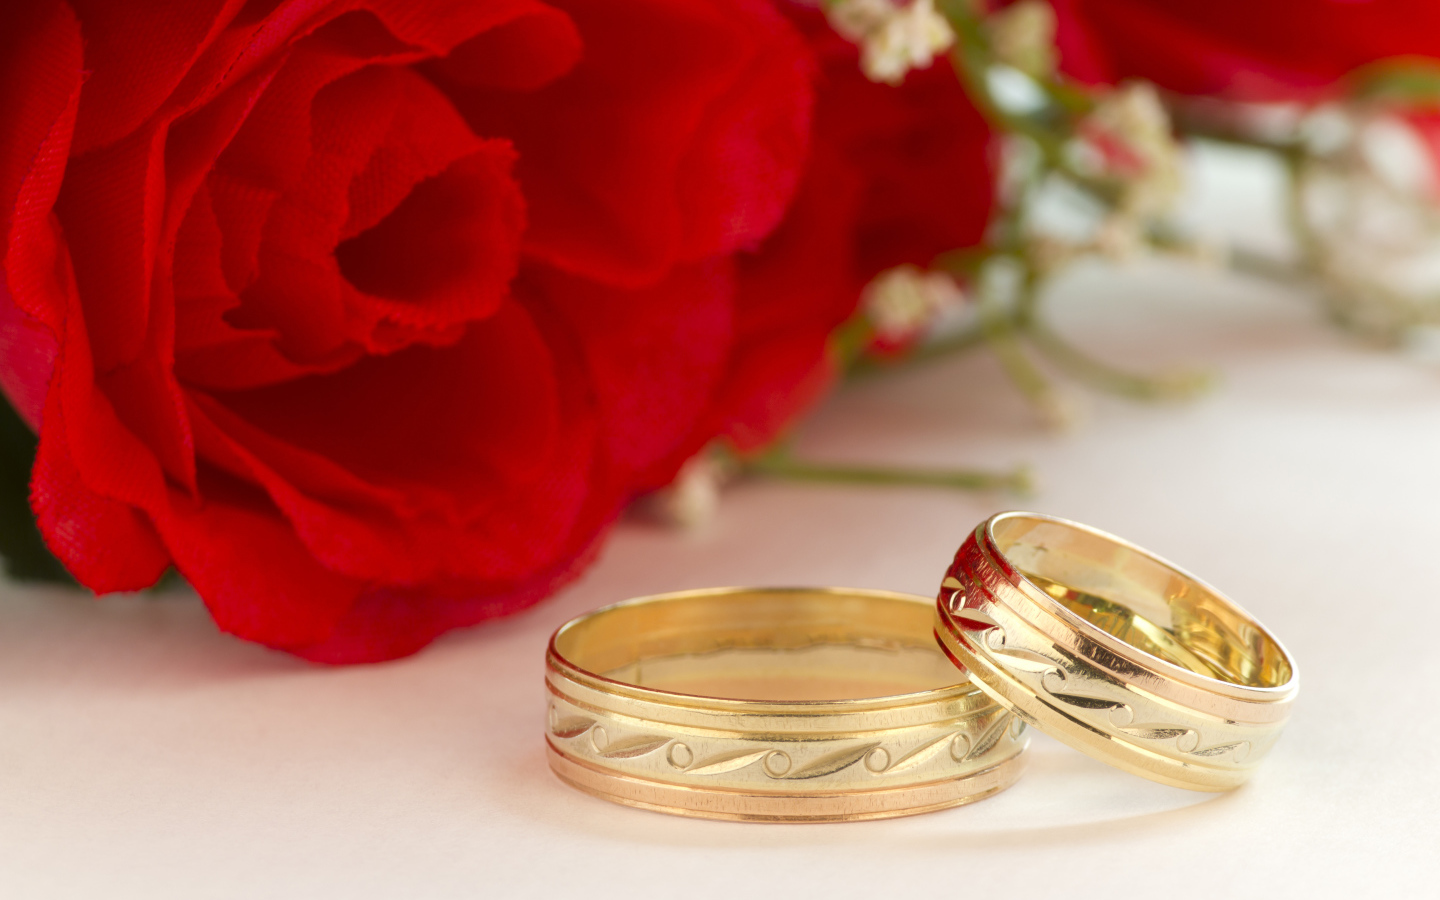 Золотые обручальные кольца с рисунком и красные розы на свадьбу